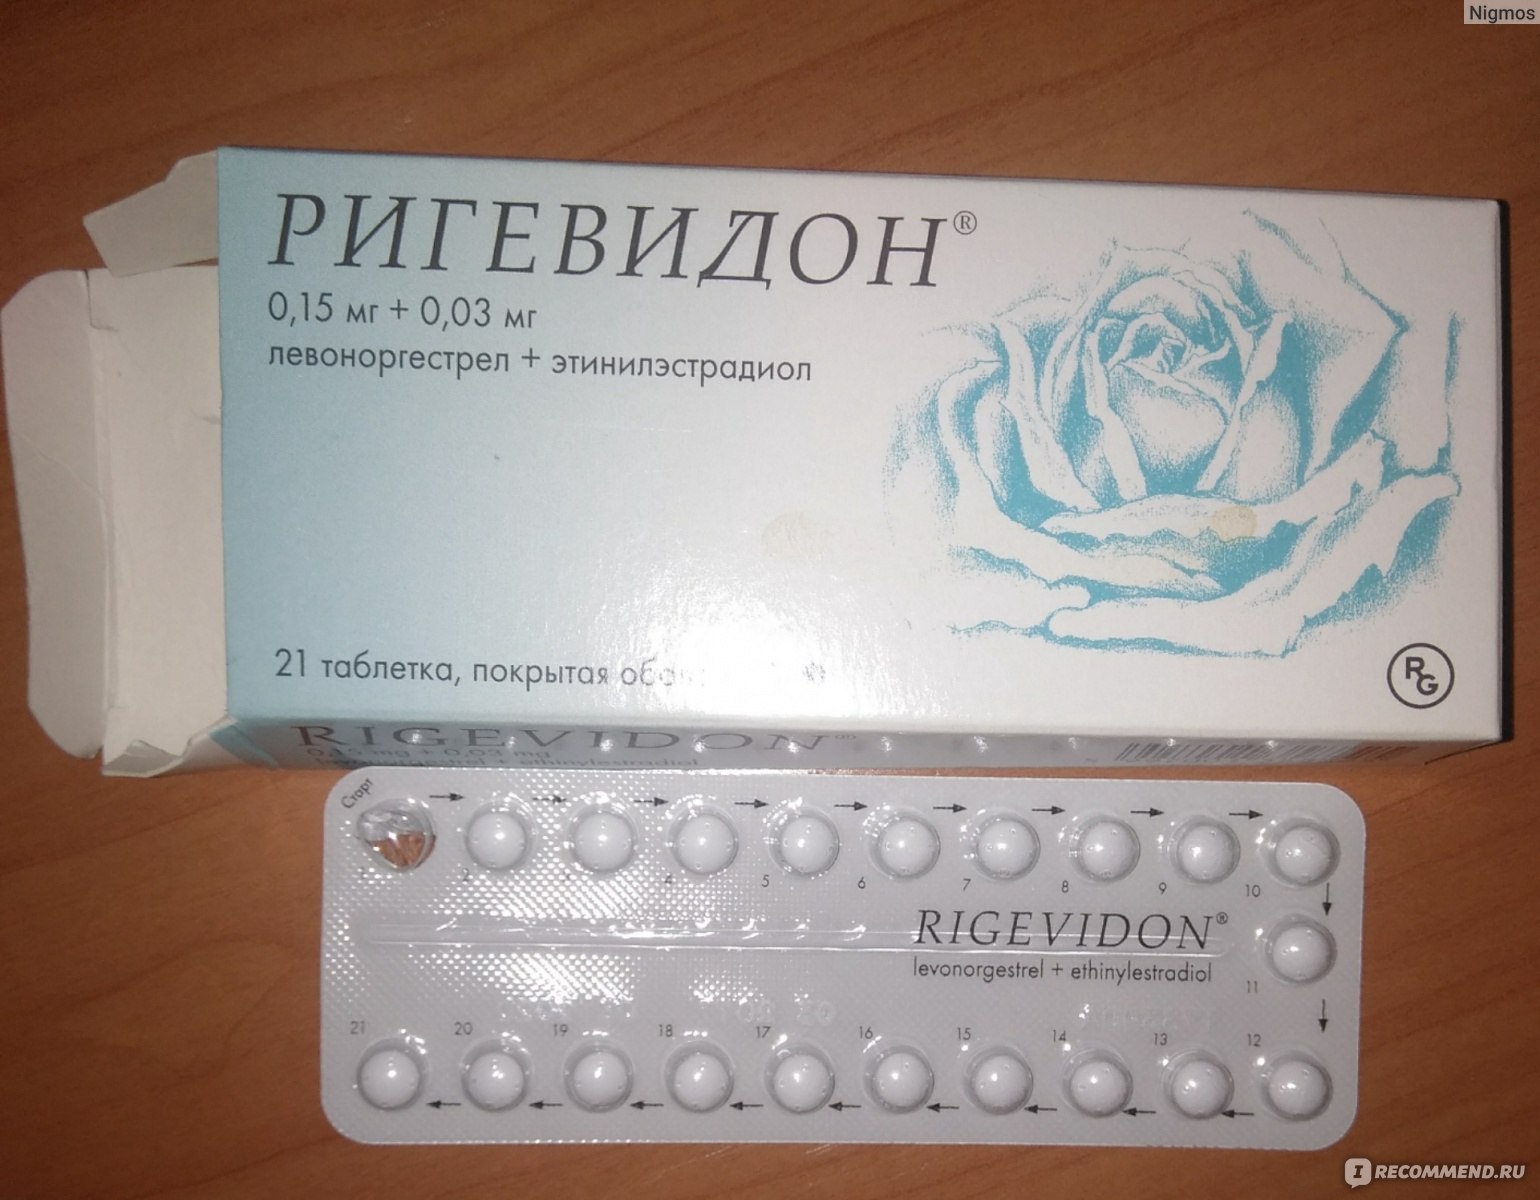 Сколько дней пьют противозачаточные. Противозачаточные таблетки ригевидон. Гормональный препарат ригевидон. Противозачаточные таблетки для женщин ригевидон. Таблетки противозачаточные реговидон.